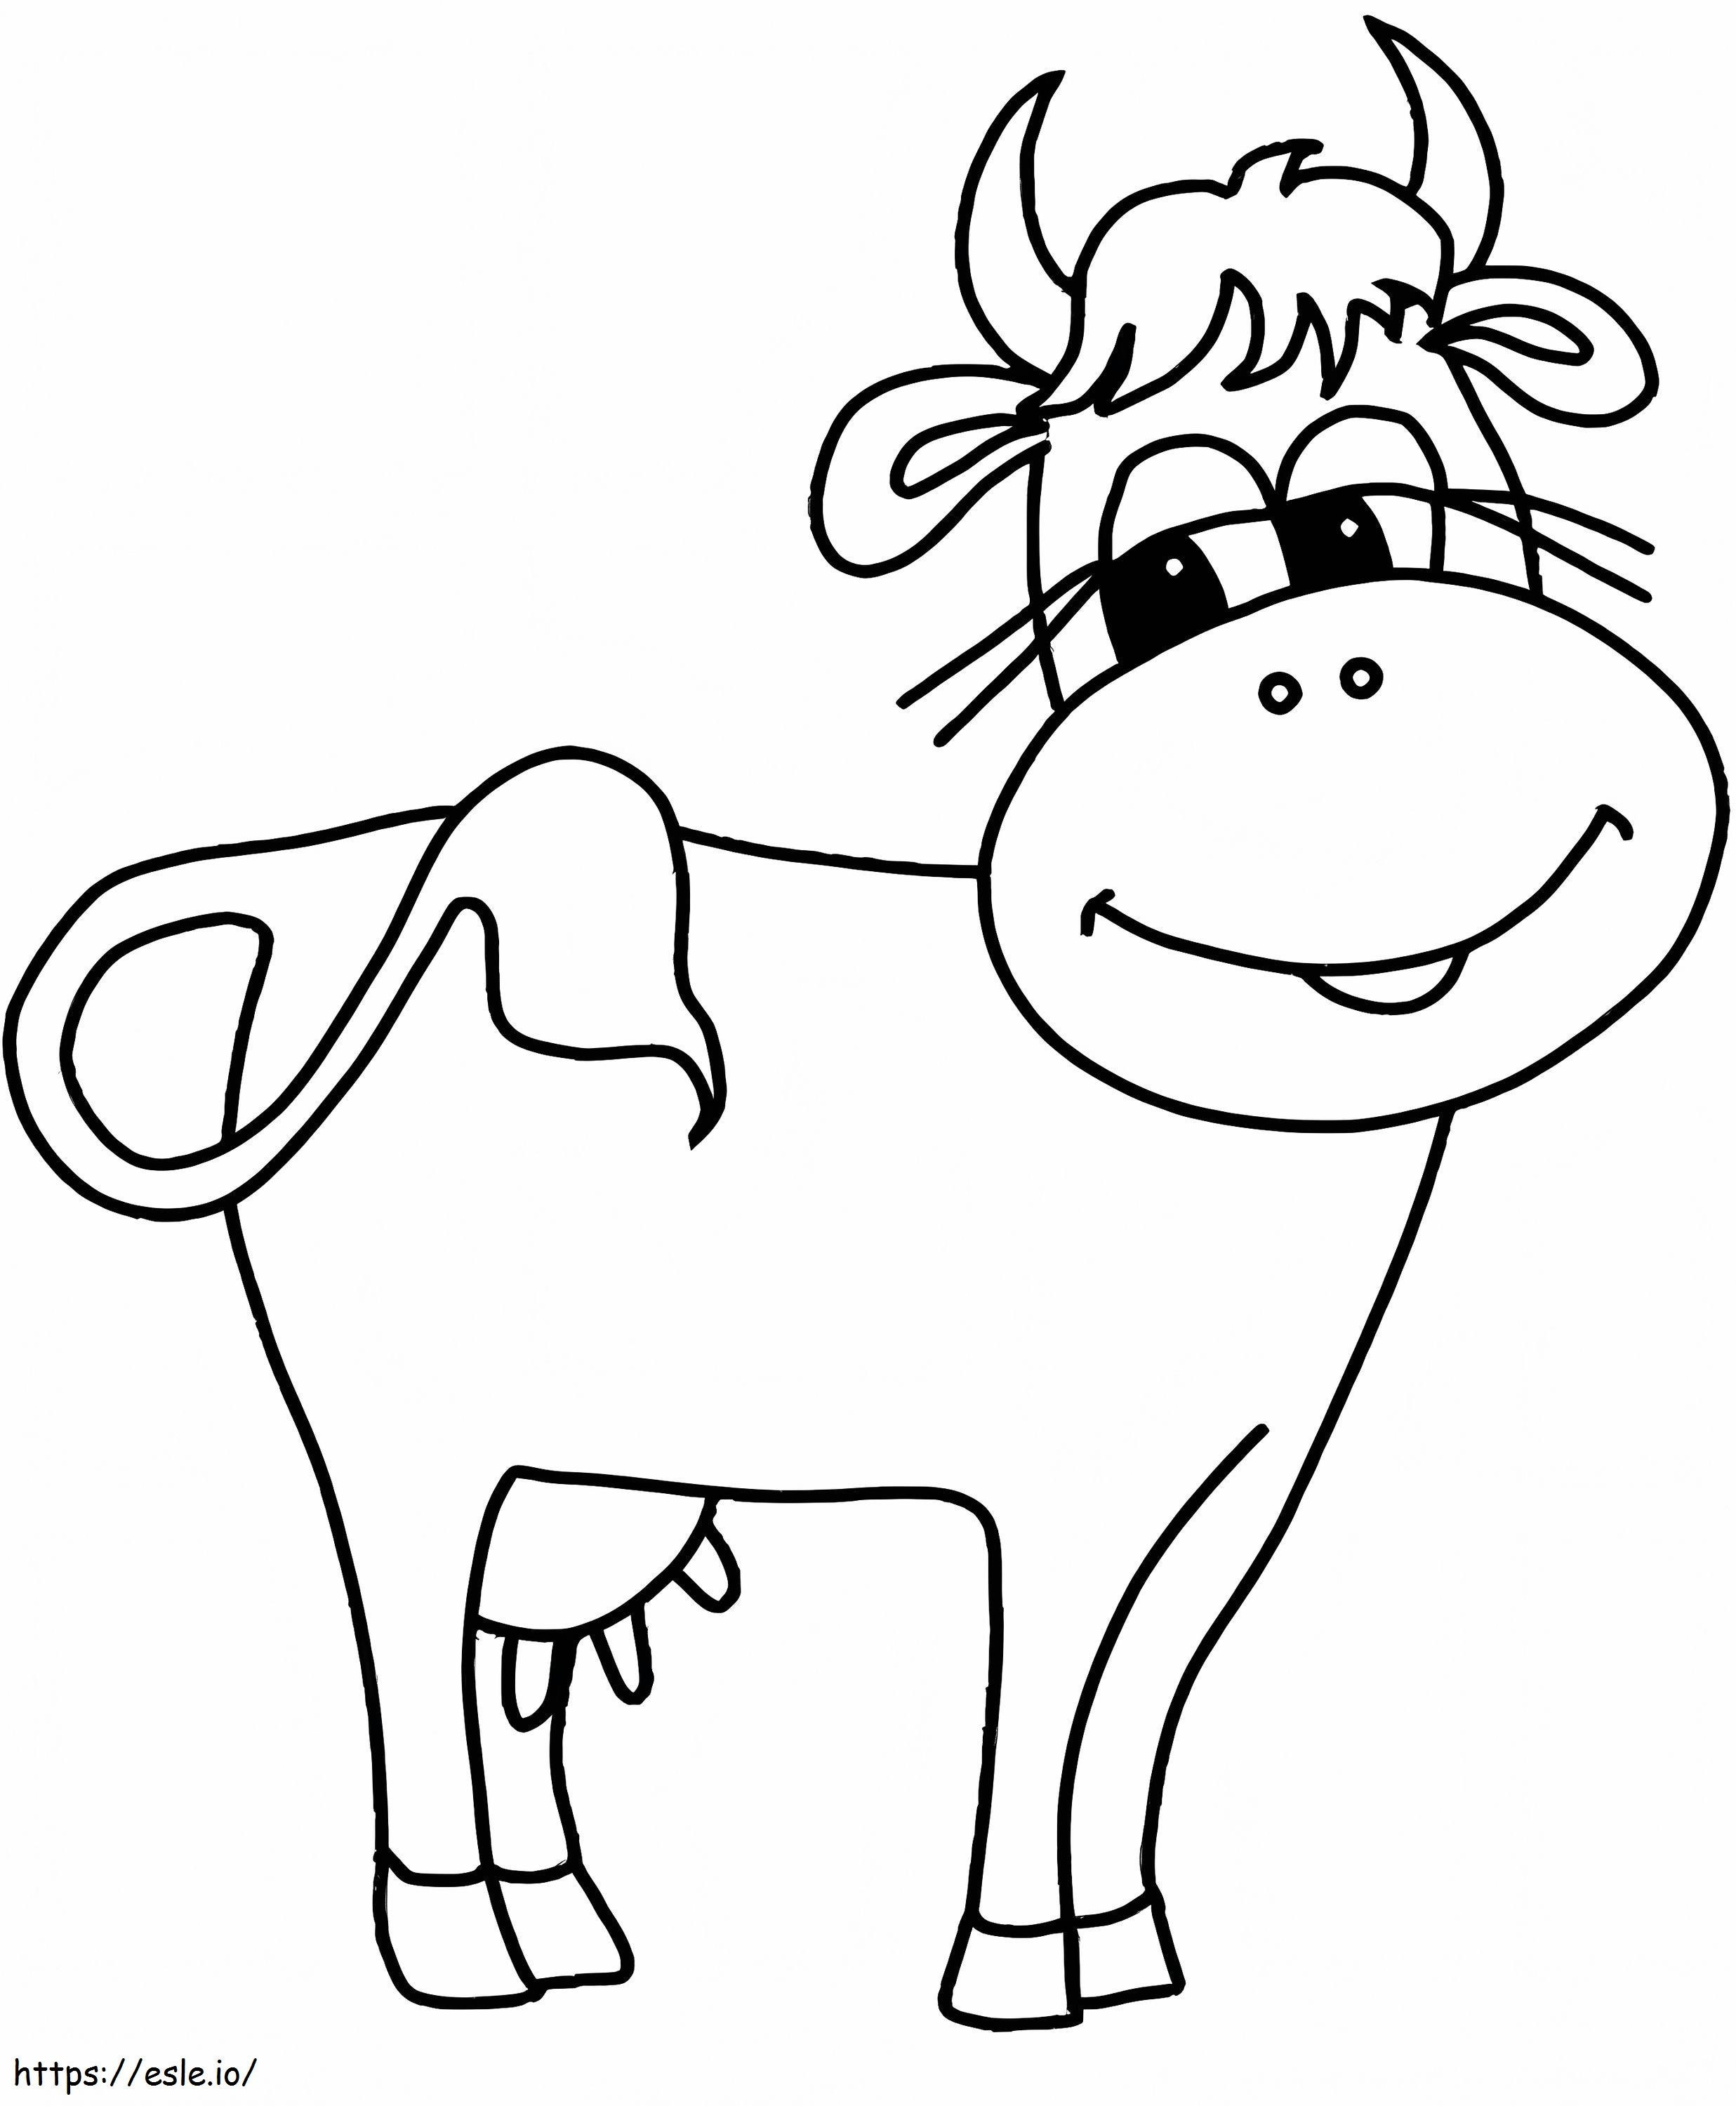 Krowa Jest Uśmiechnięta kolorowanka